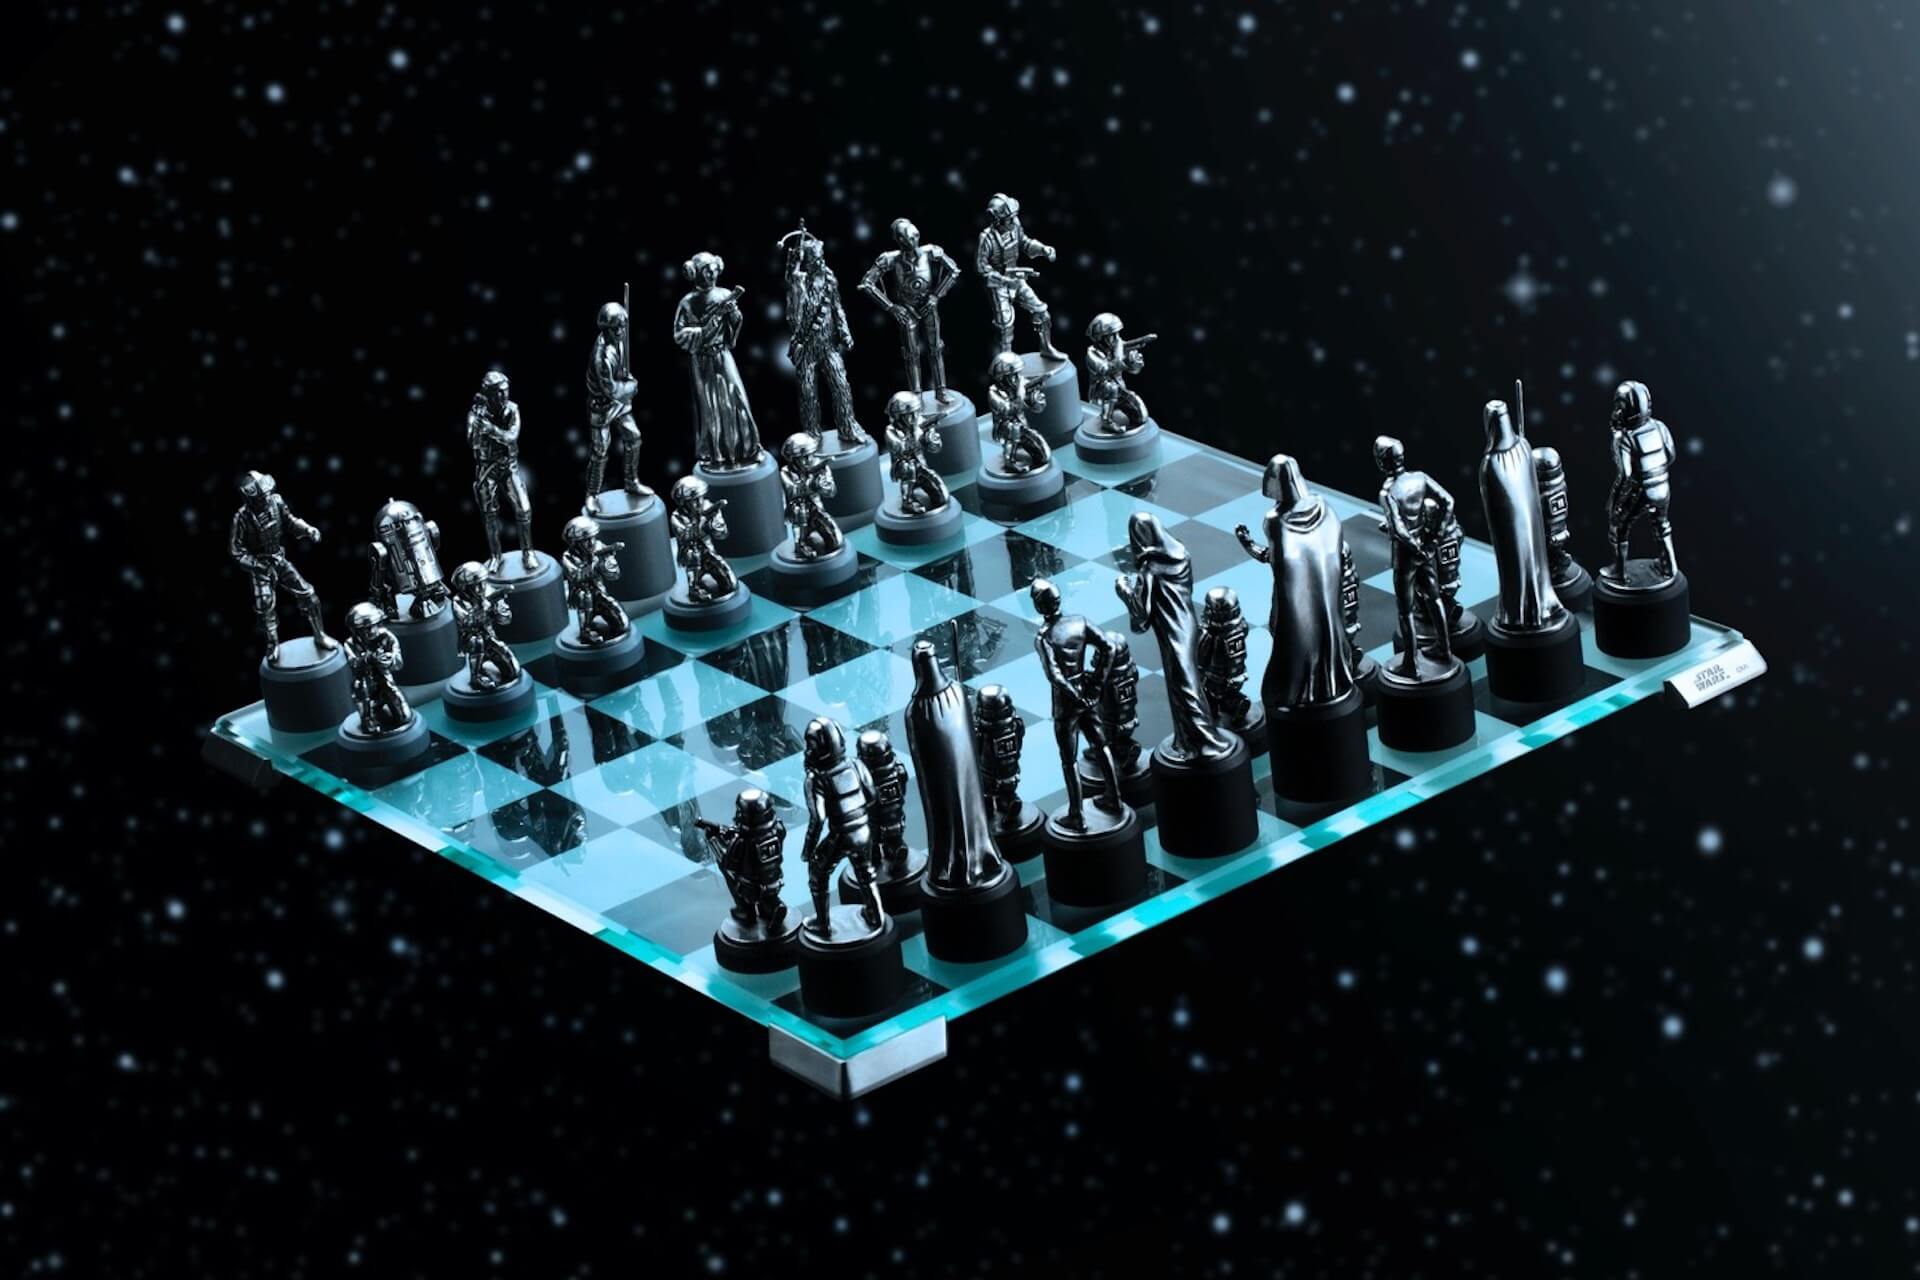 「スター・ウォーズ」シリーズのキャラクターがチェスの駒に！？高級感満載のクラシックチェスセットが発売決定 art191213_starwars_chess_13